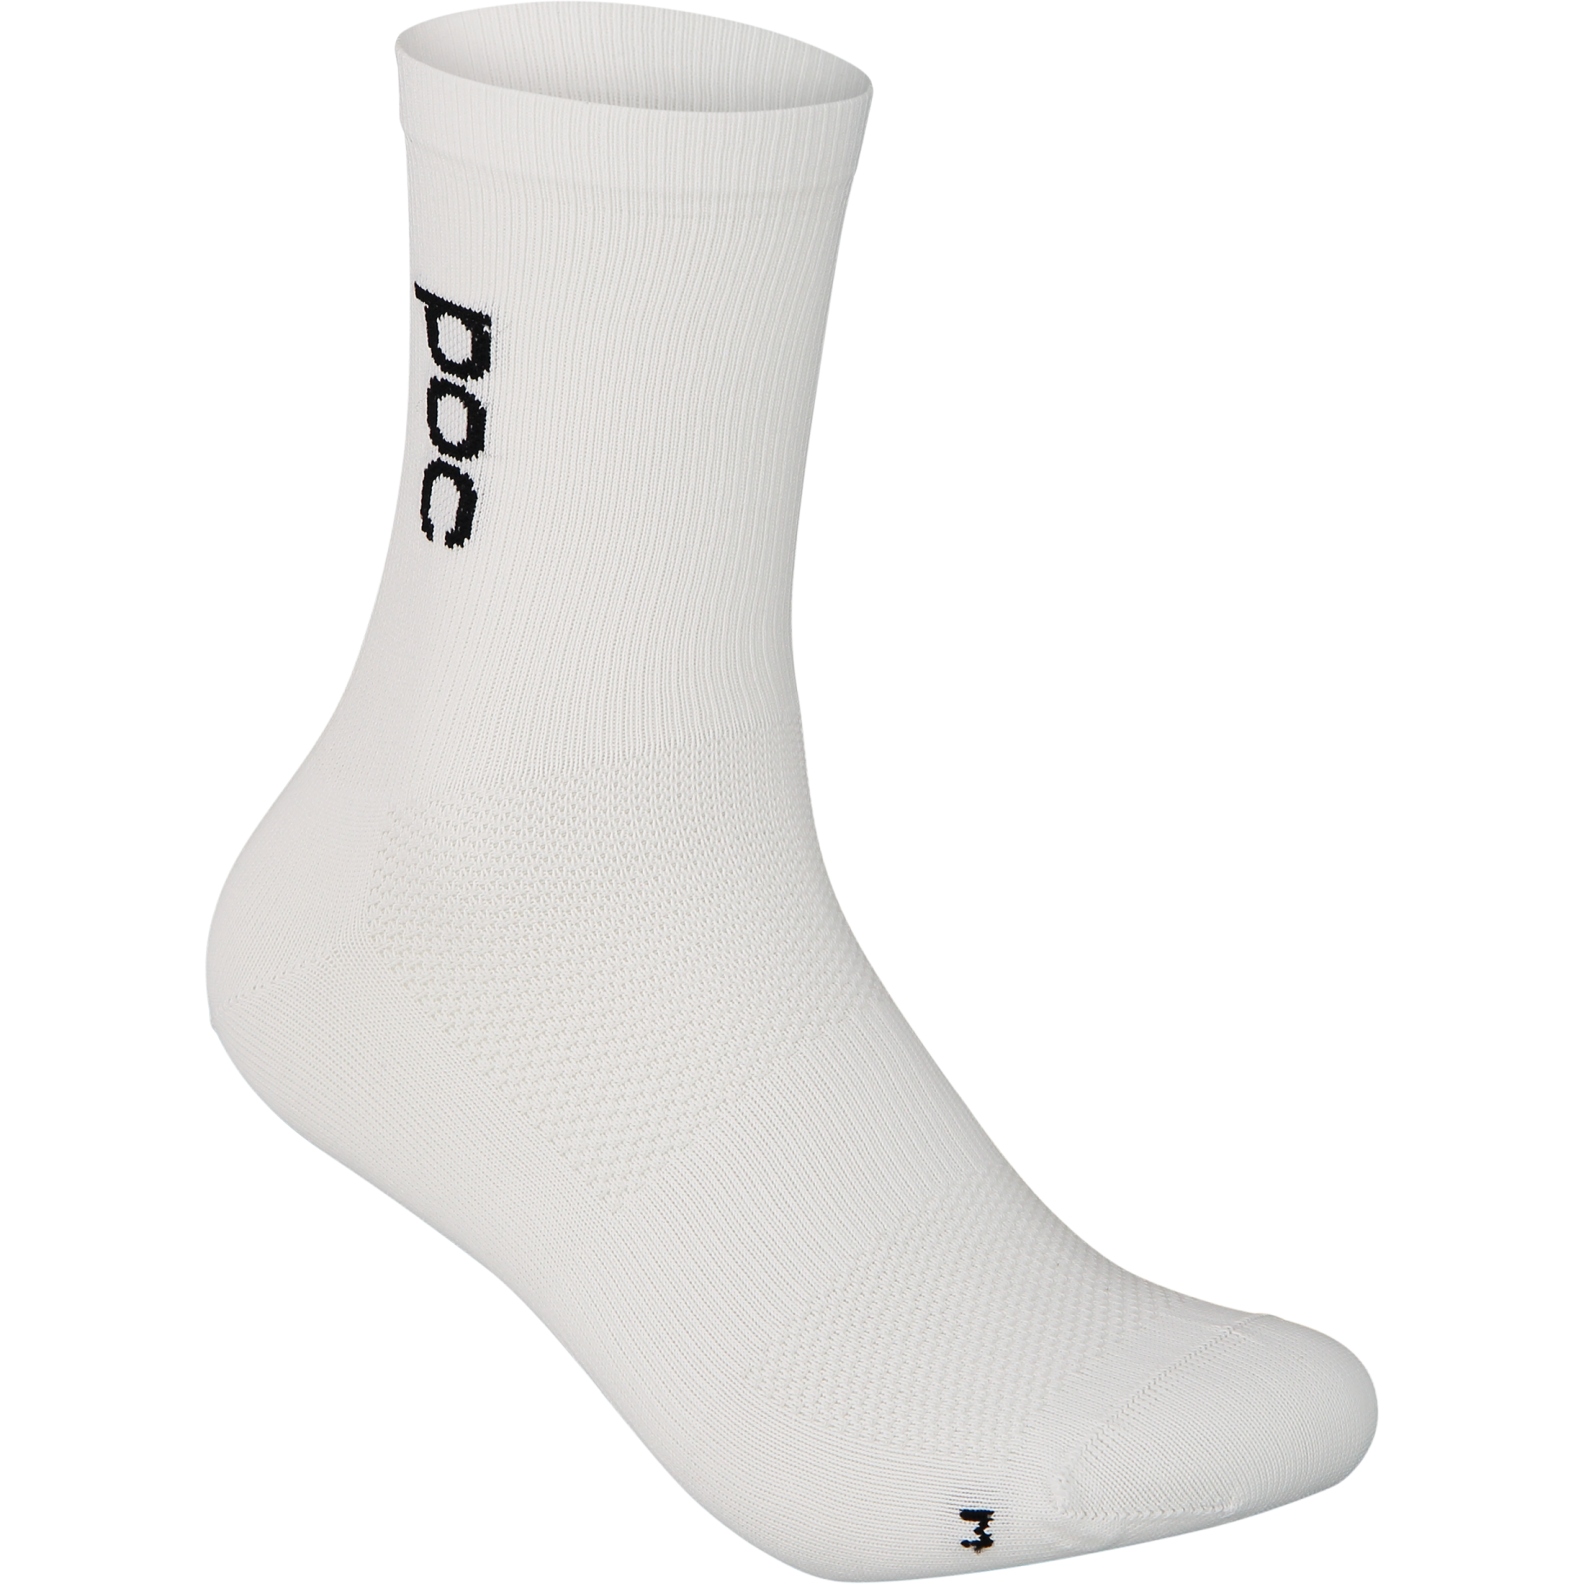 Produktbild von POC Soleus Lite Socken mittellang - 1001 Hydrogen White